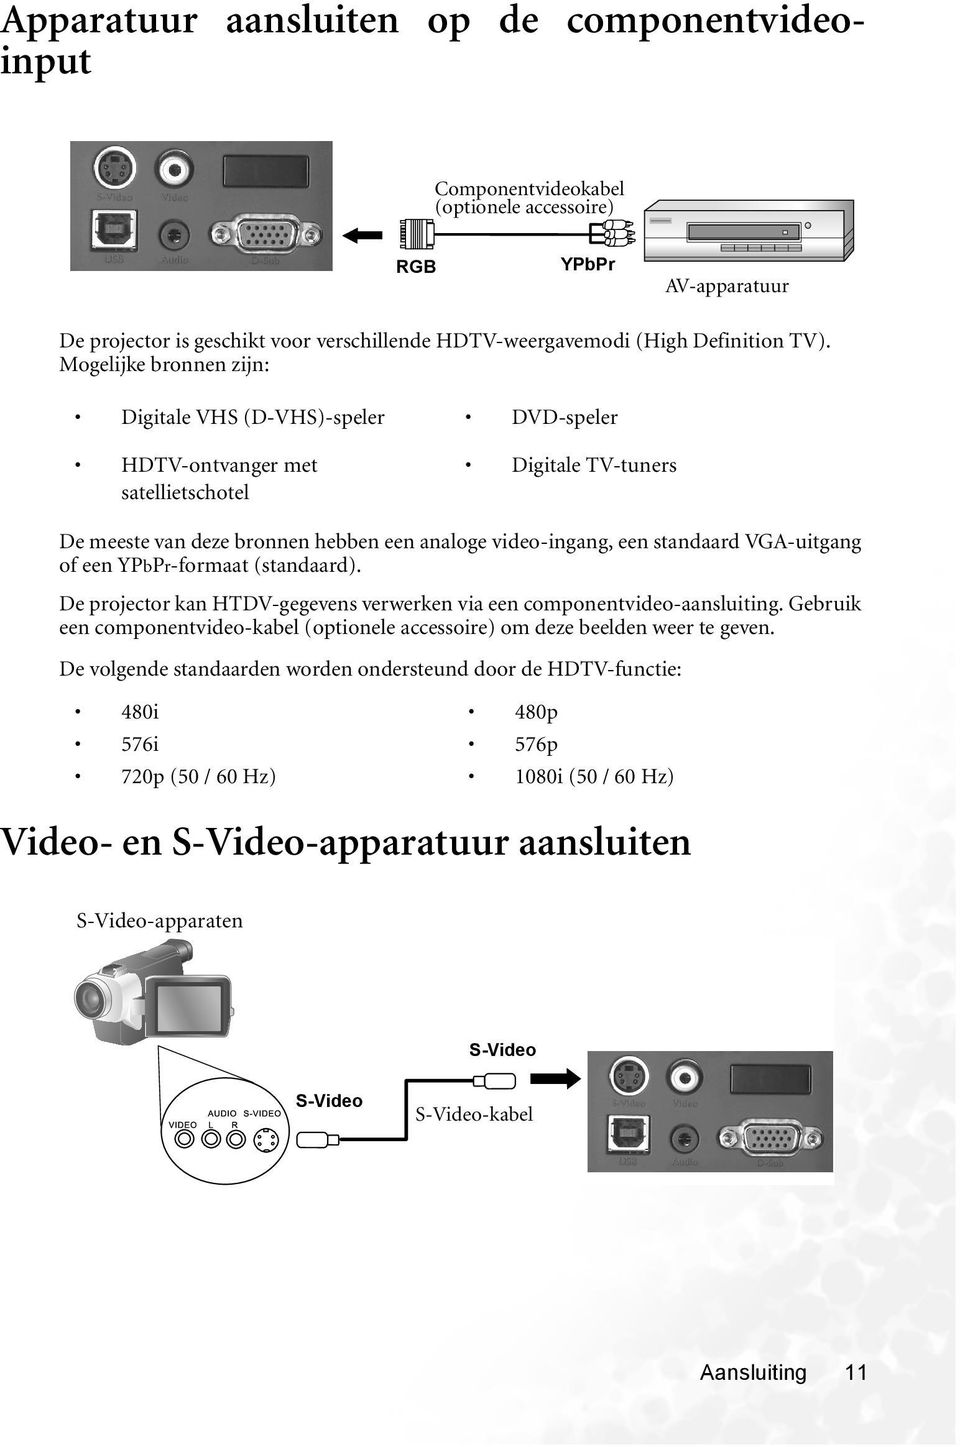 VGA-uitgang of een YPbPr-formaat (standaard). De projector kan HTDV-gegevens verwerken via een componentvideo-aansluiting.